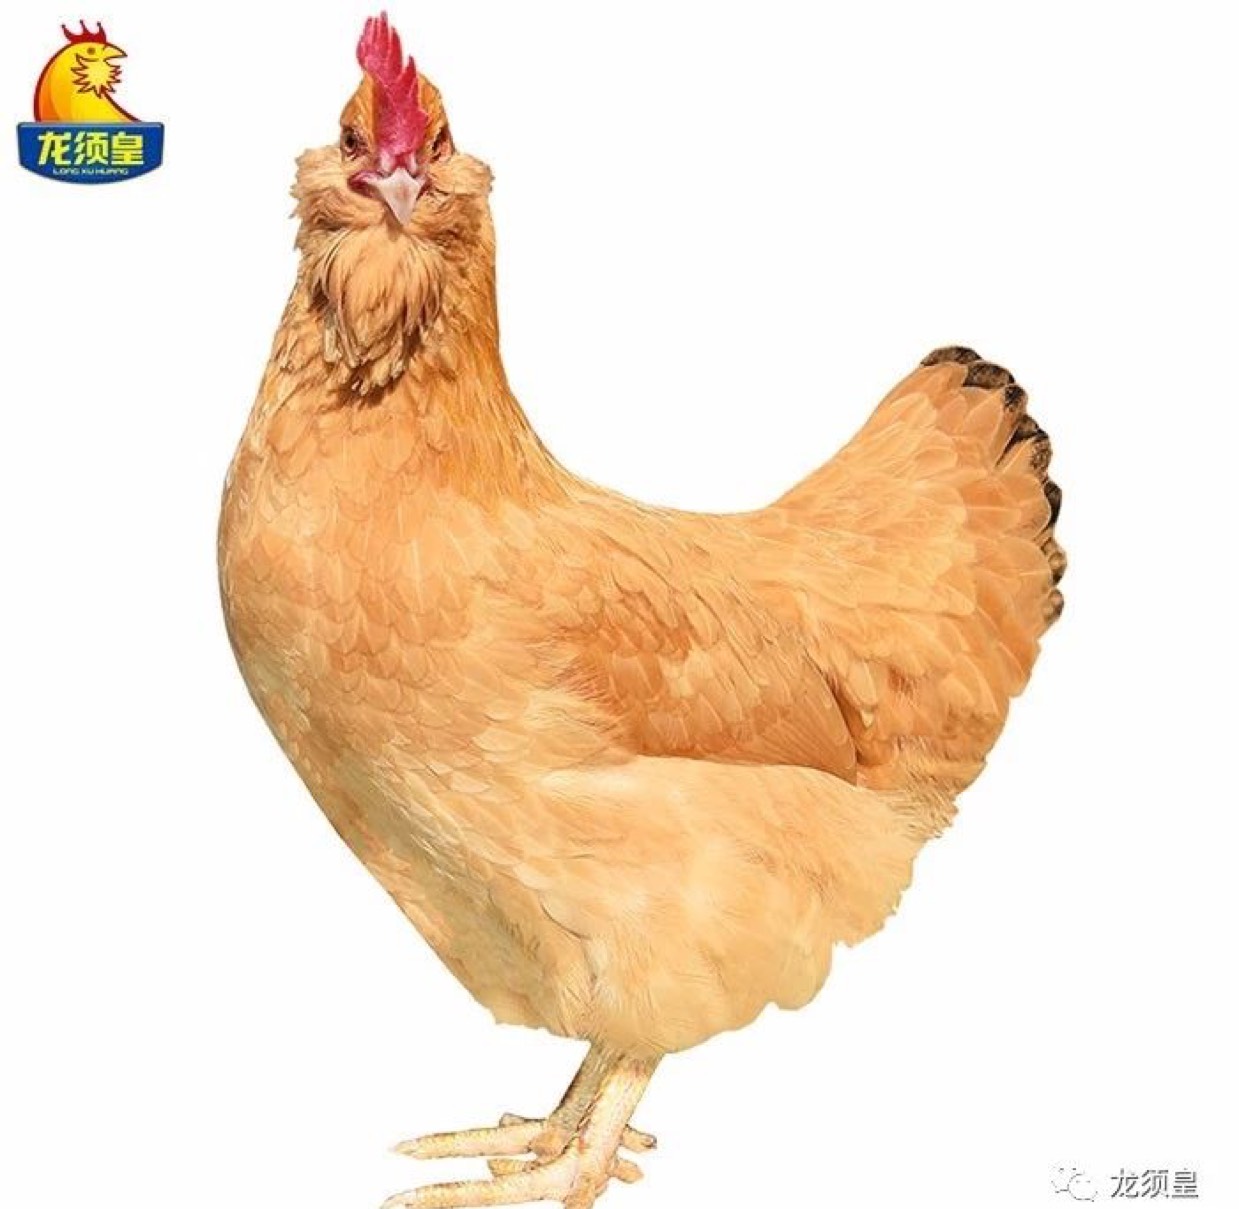 土鸡 广东三大名鸡之首,惠州龙门胡须鸡,山林散养130天